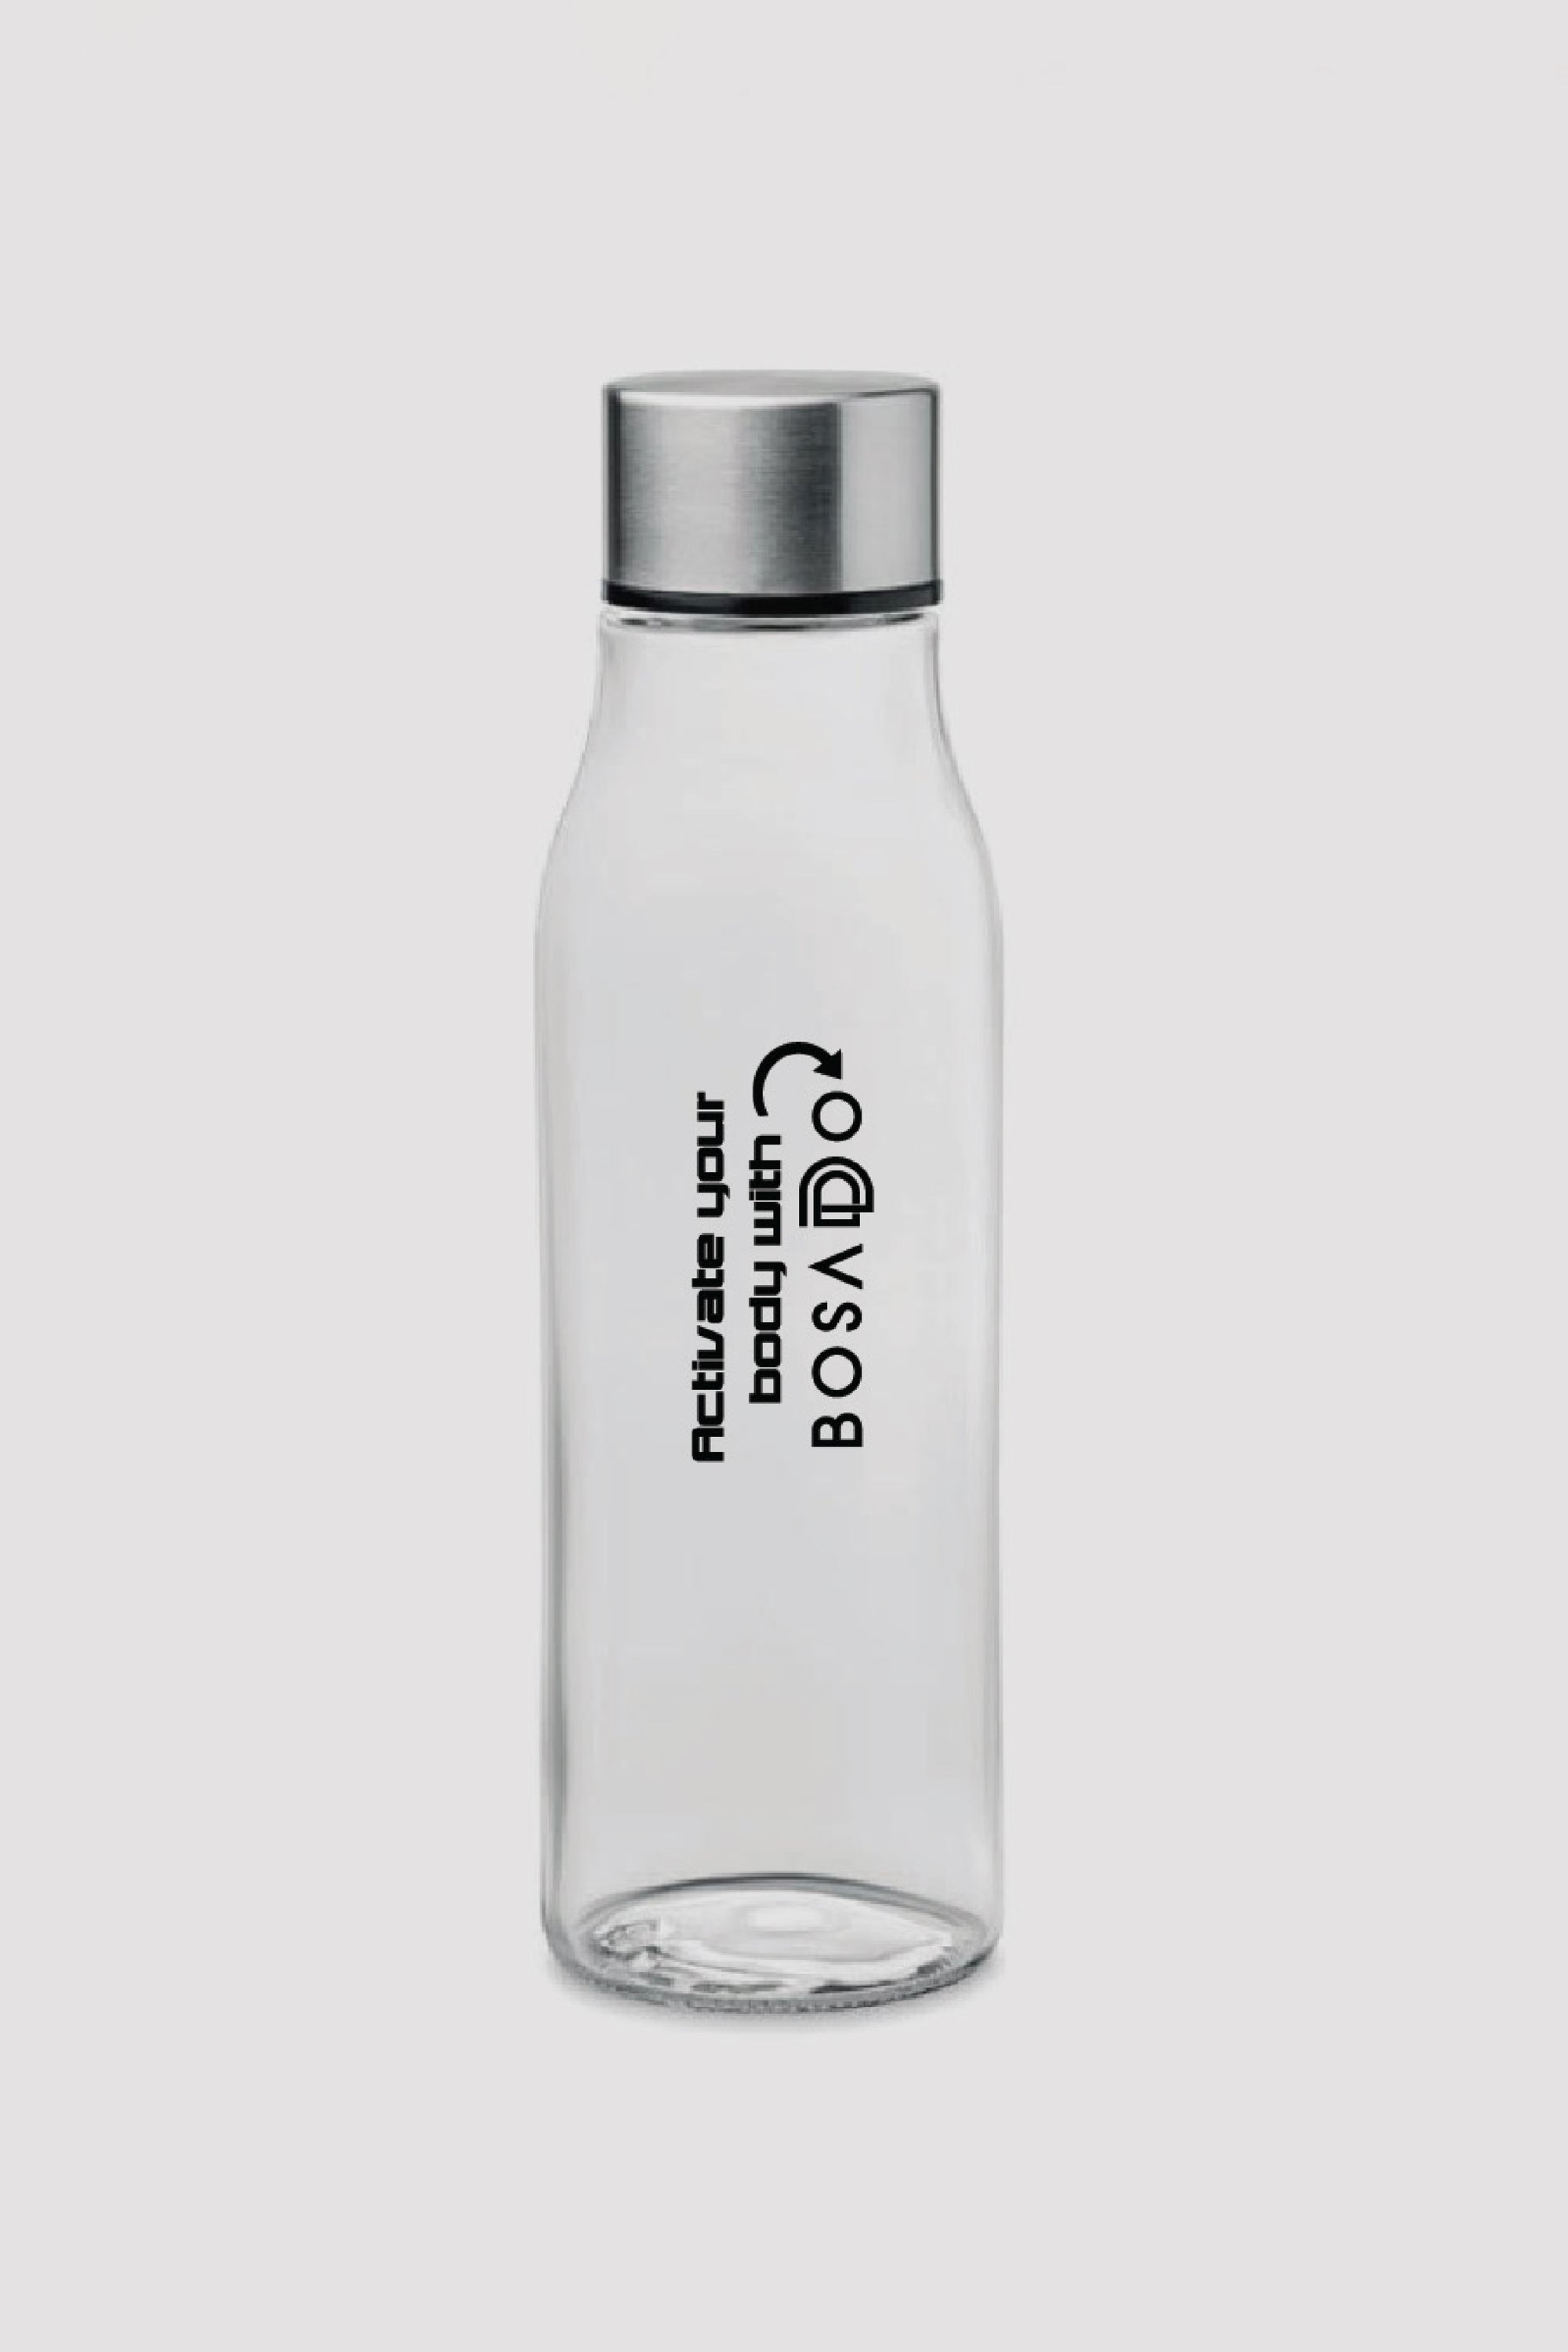 BOSADDO water bottle